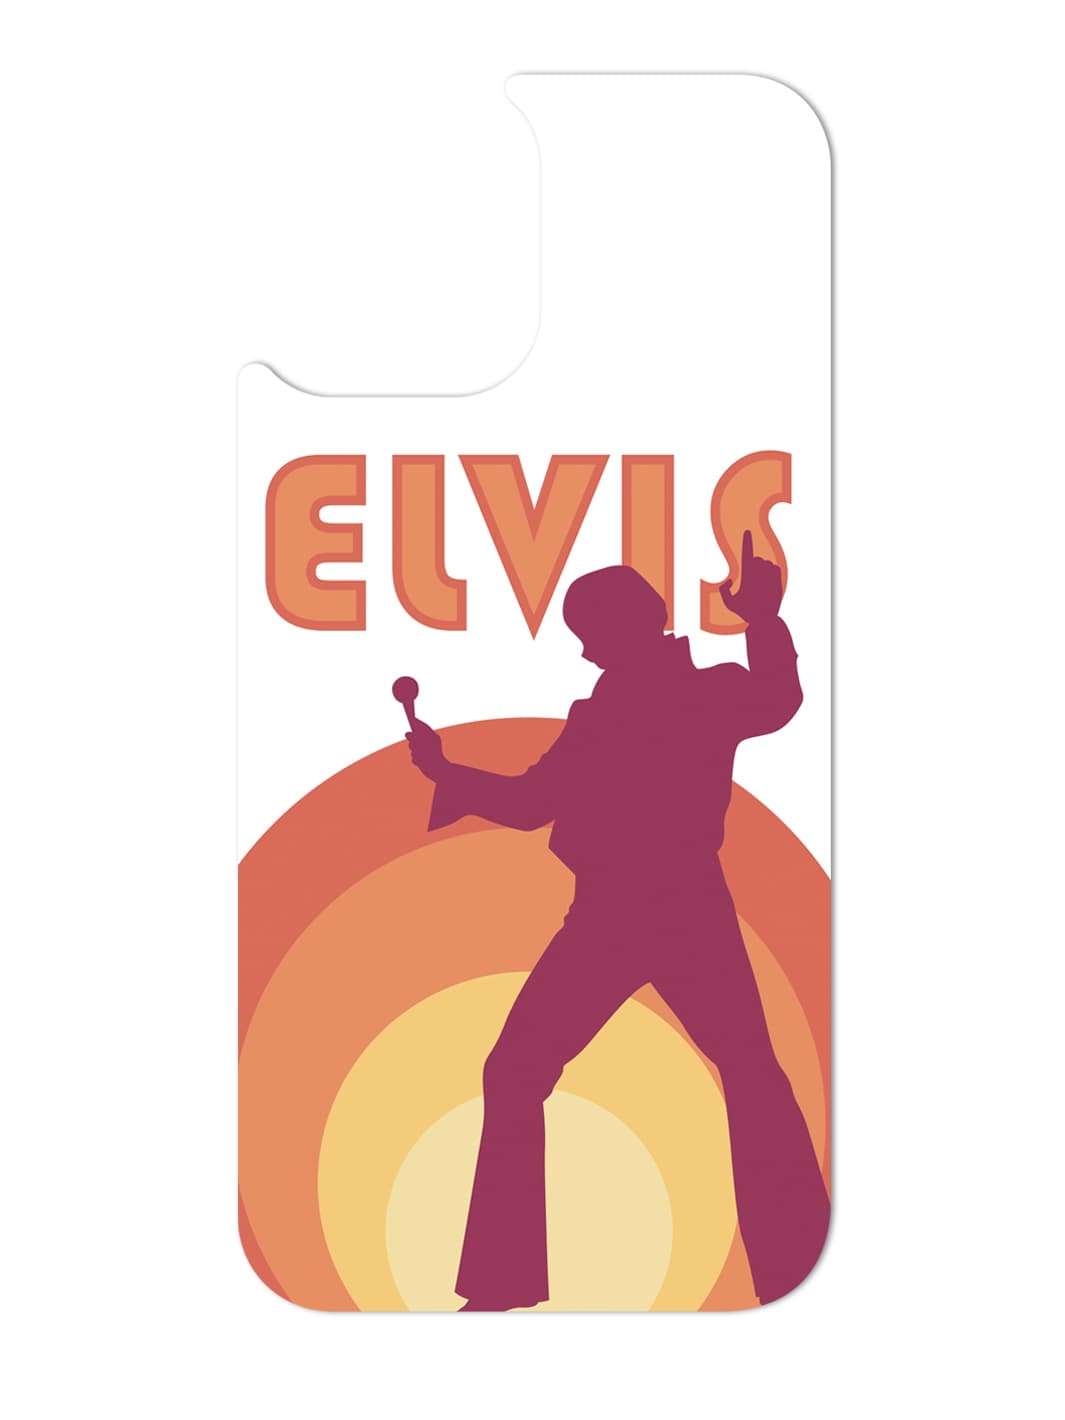 Phone Case Set - Elvis Presley 4